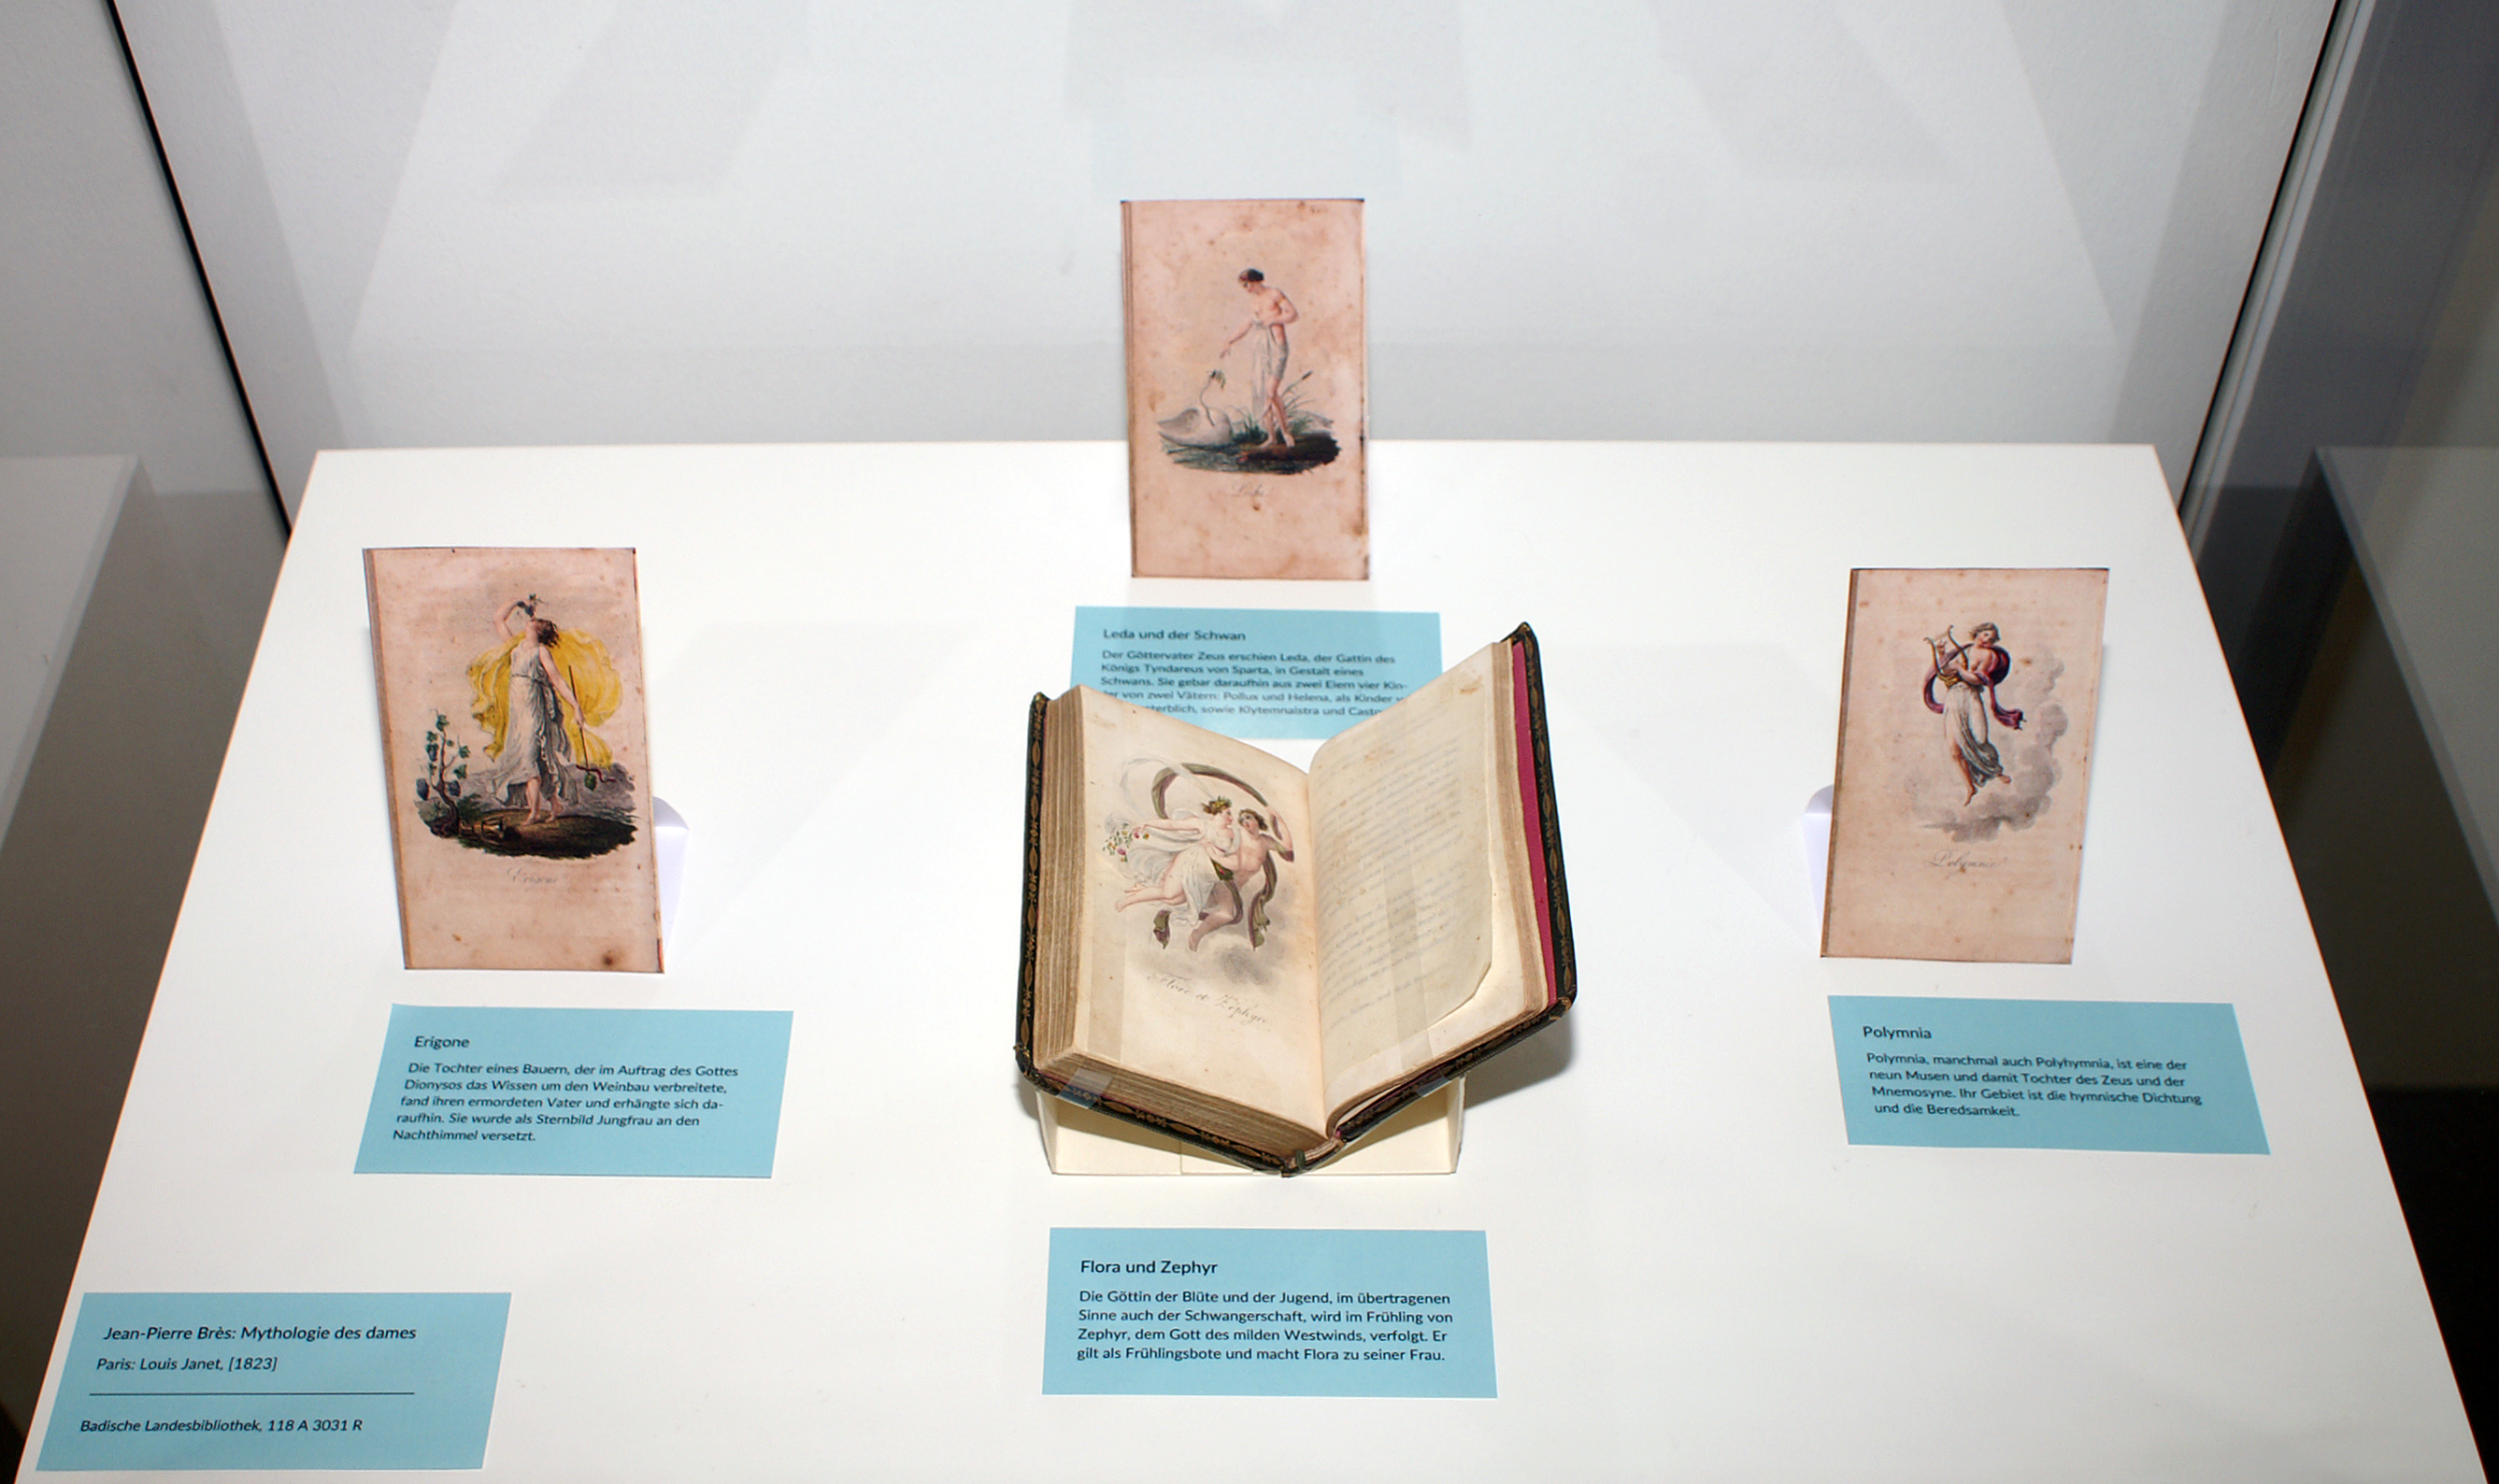 Ausgestellt sind vier beschriebenen von Jean-Pierre Brès "Mythologie des dames" kolorierten Stiche.